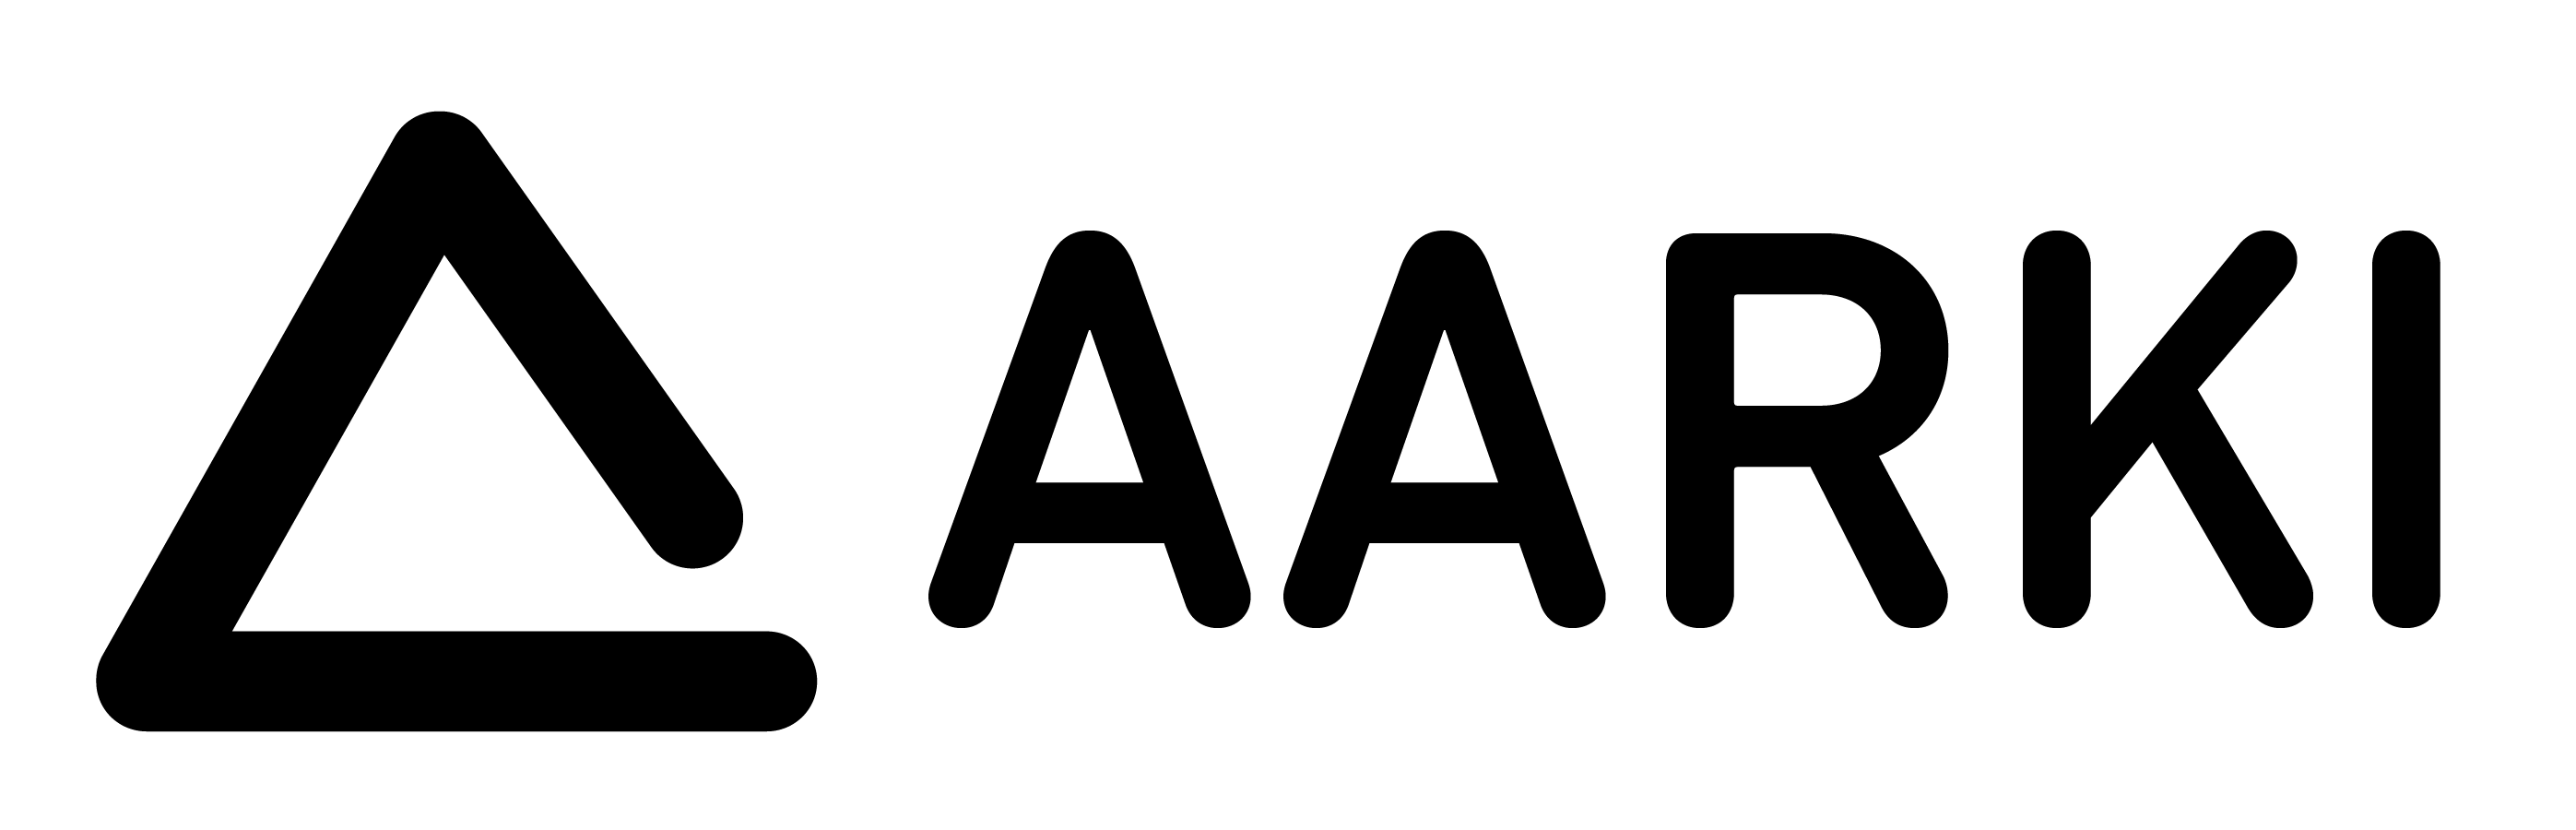 Aarki logo